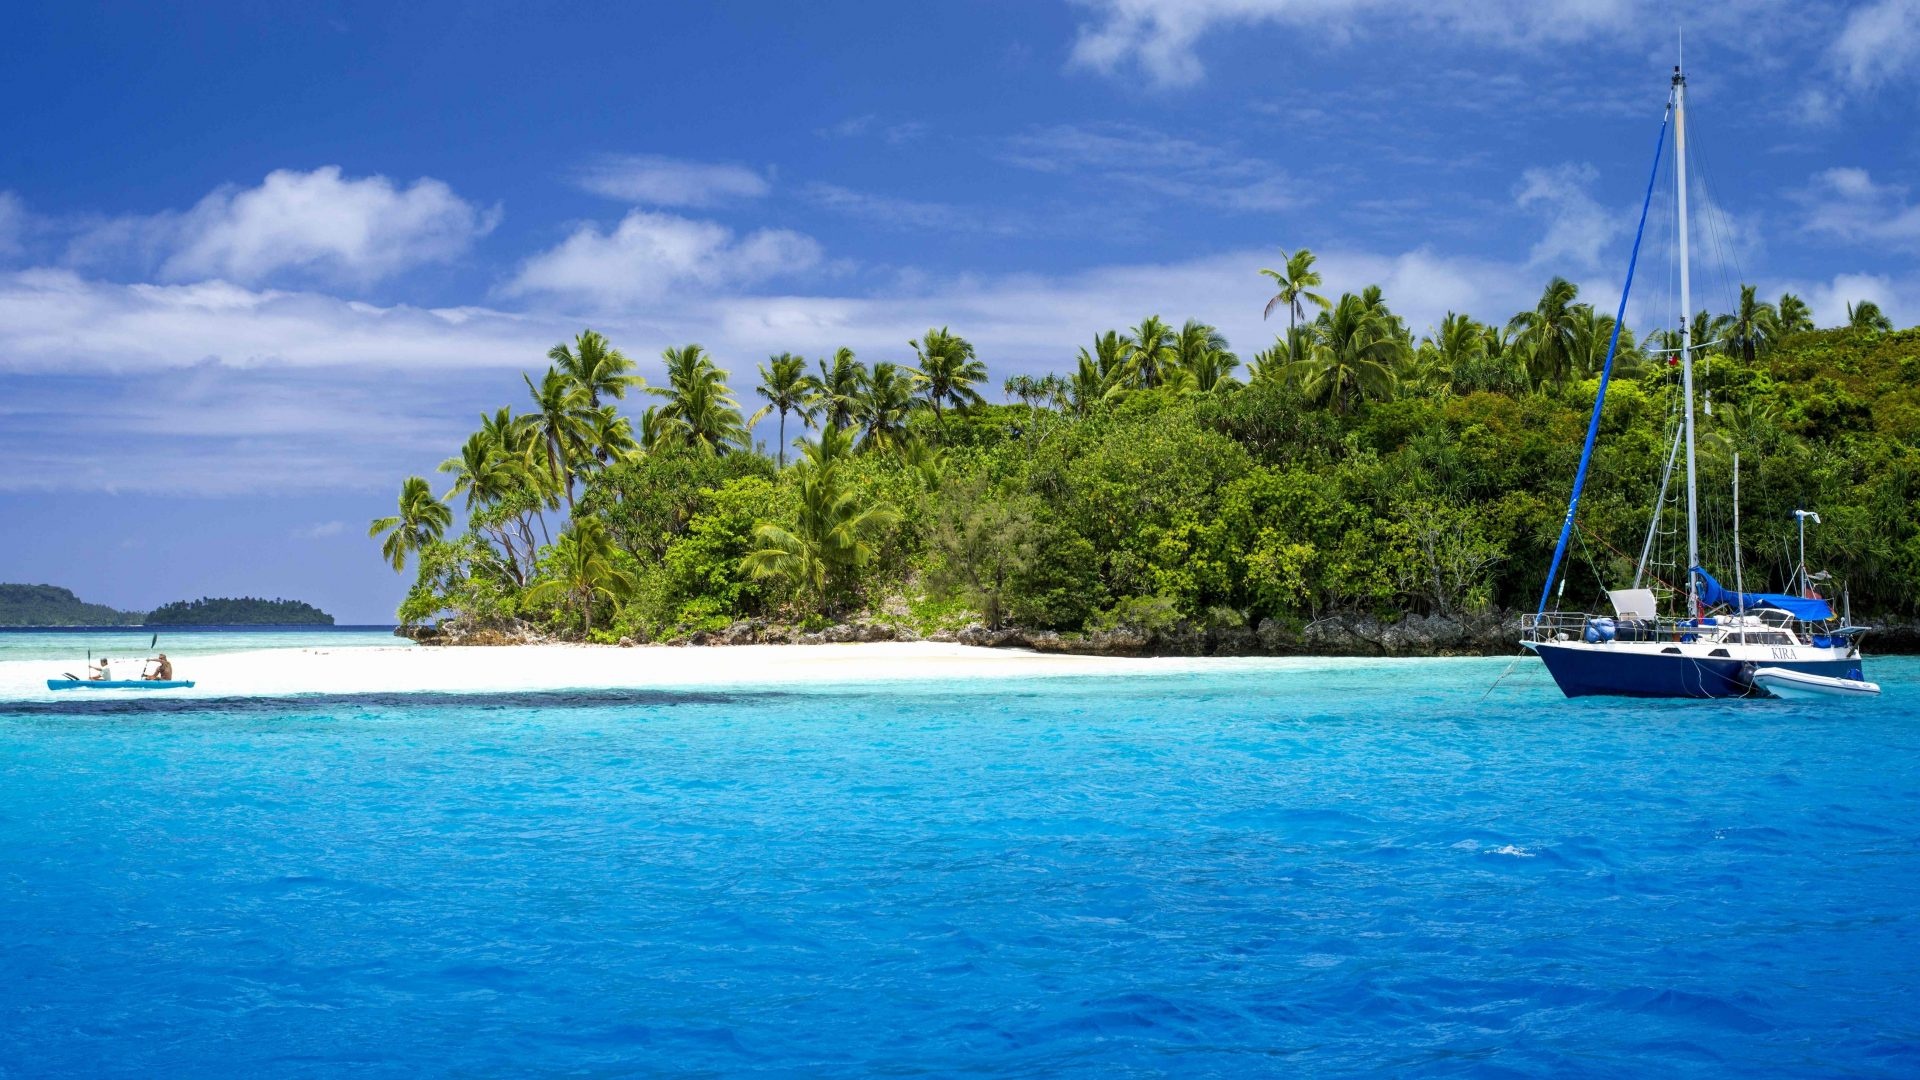 Tonga travels, Nuku Vavau, Ocean paradise, Green palms, 1920x1080 Full HD Desktop